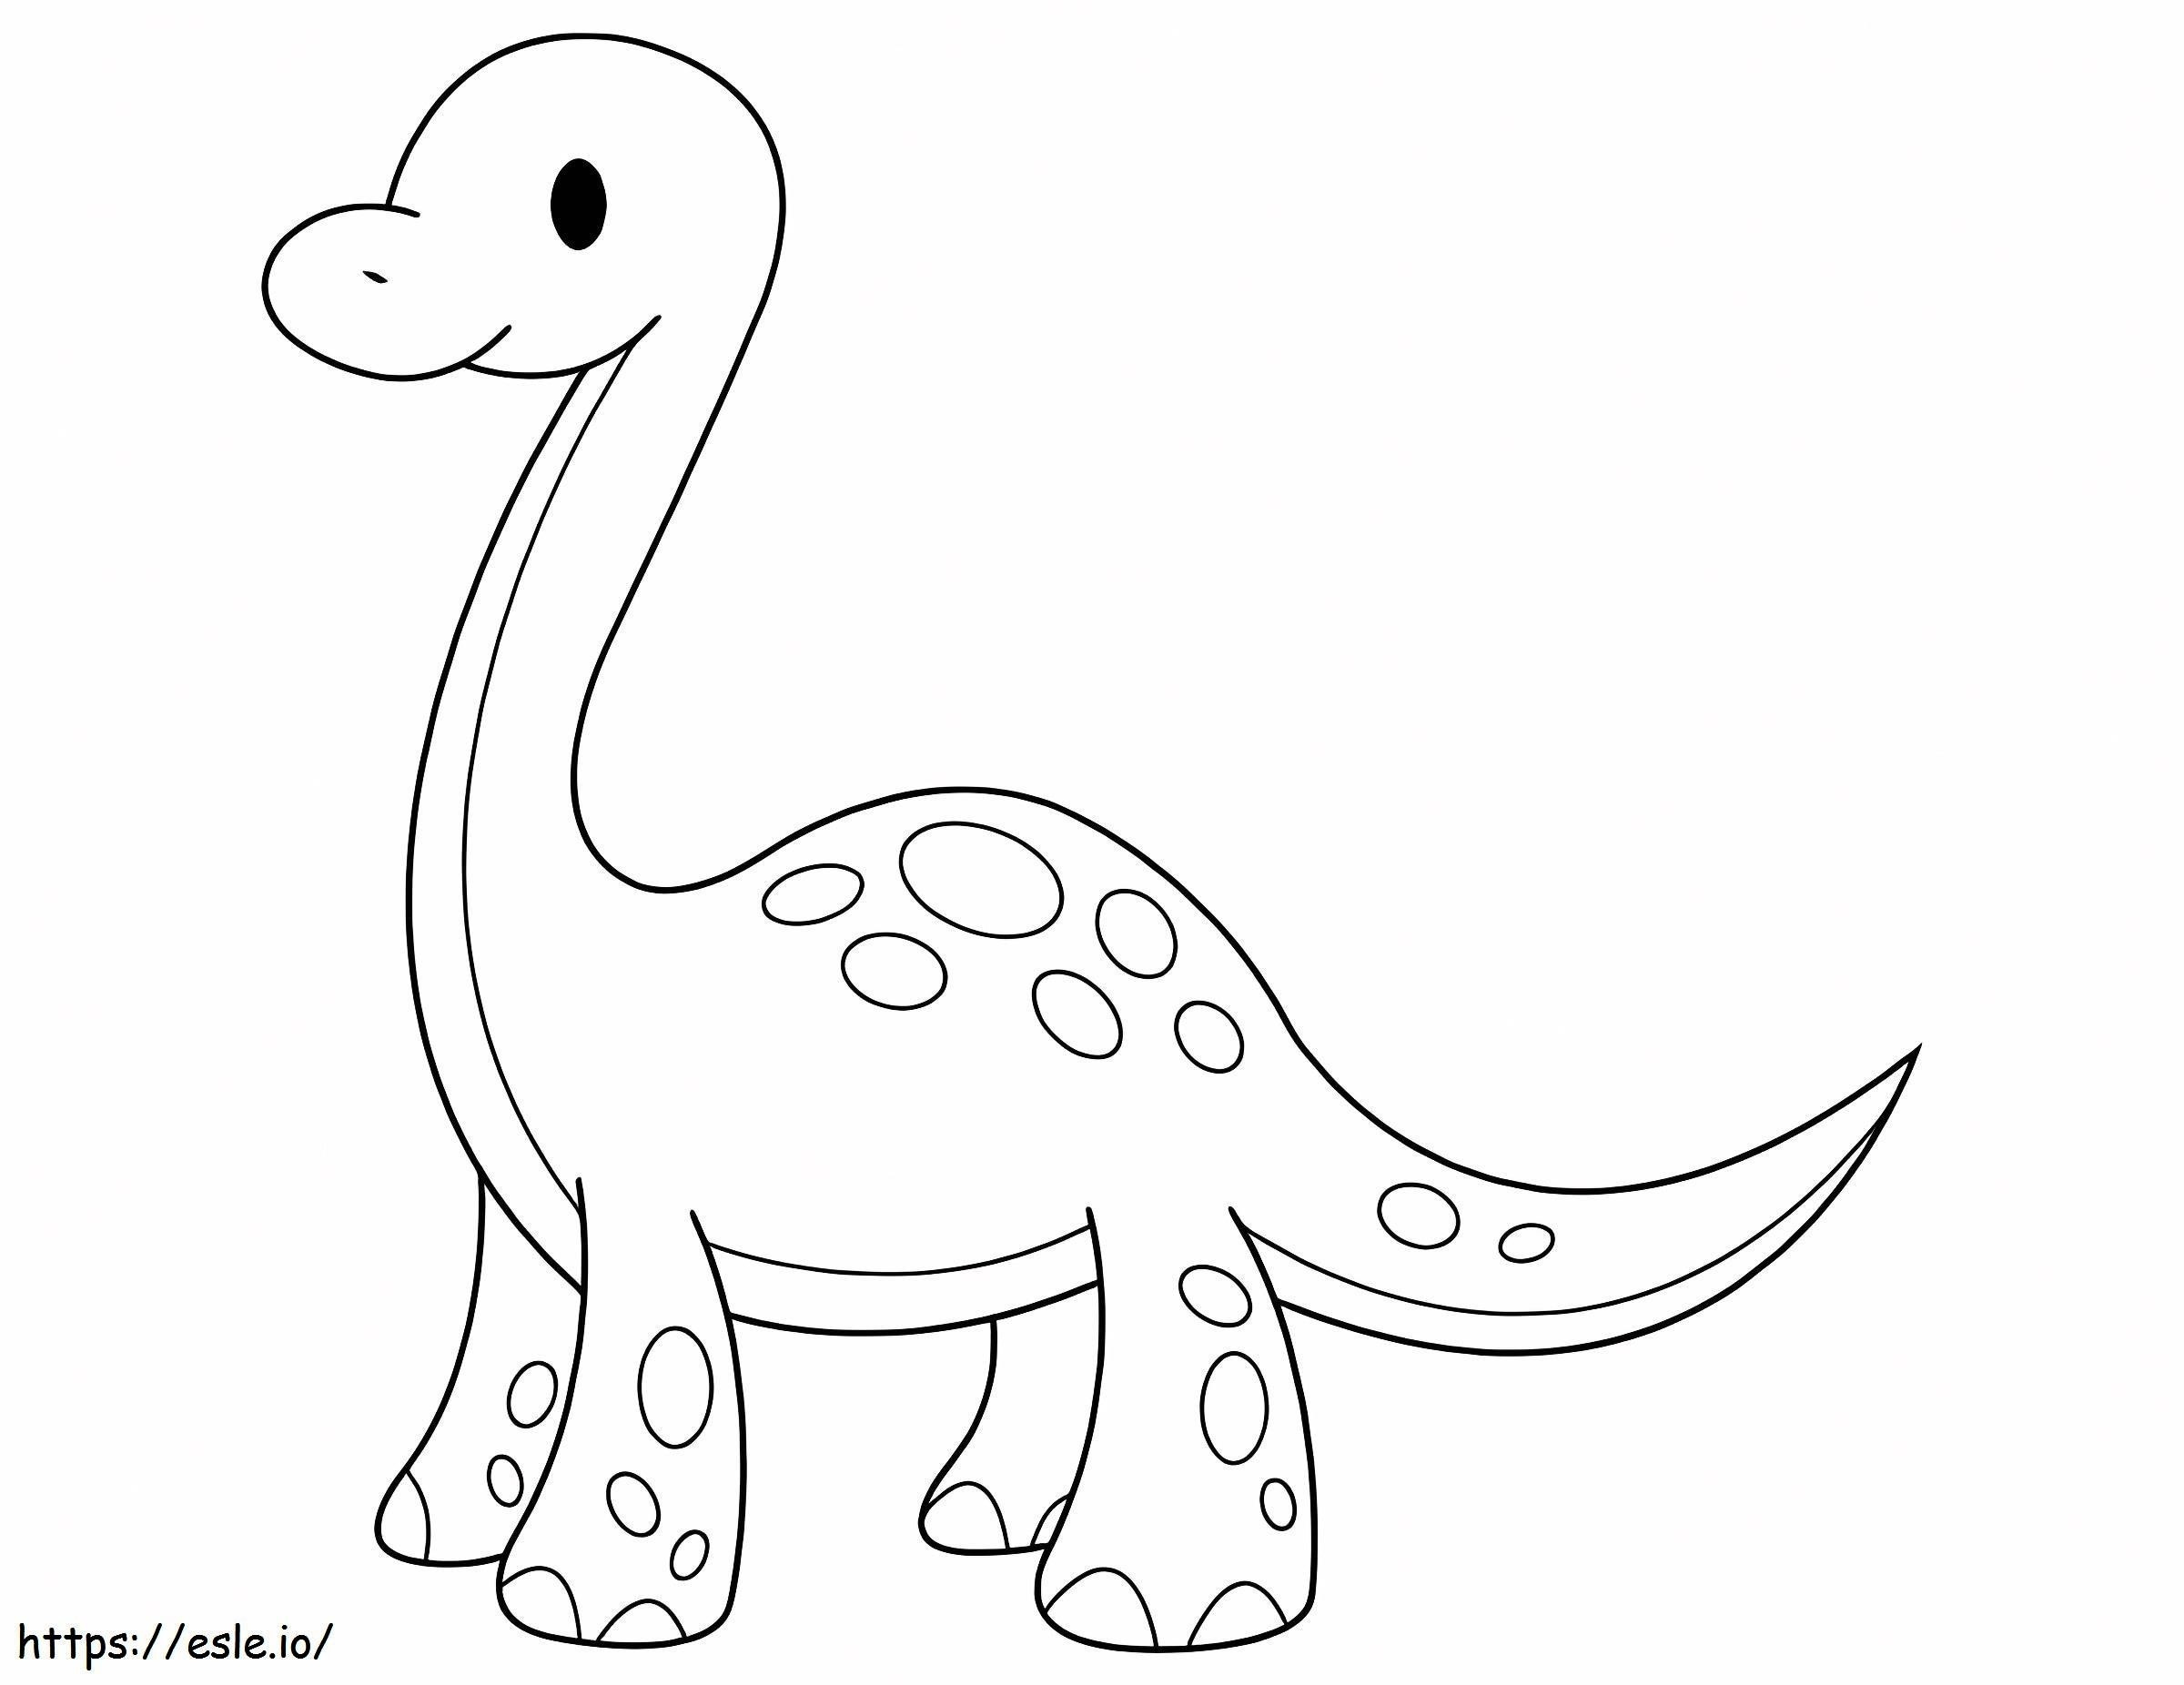 Niedlicher Baby-Brontosaurus ausmalbilder